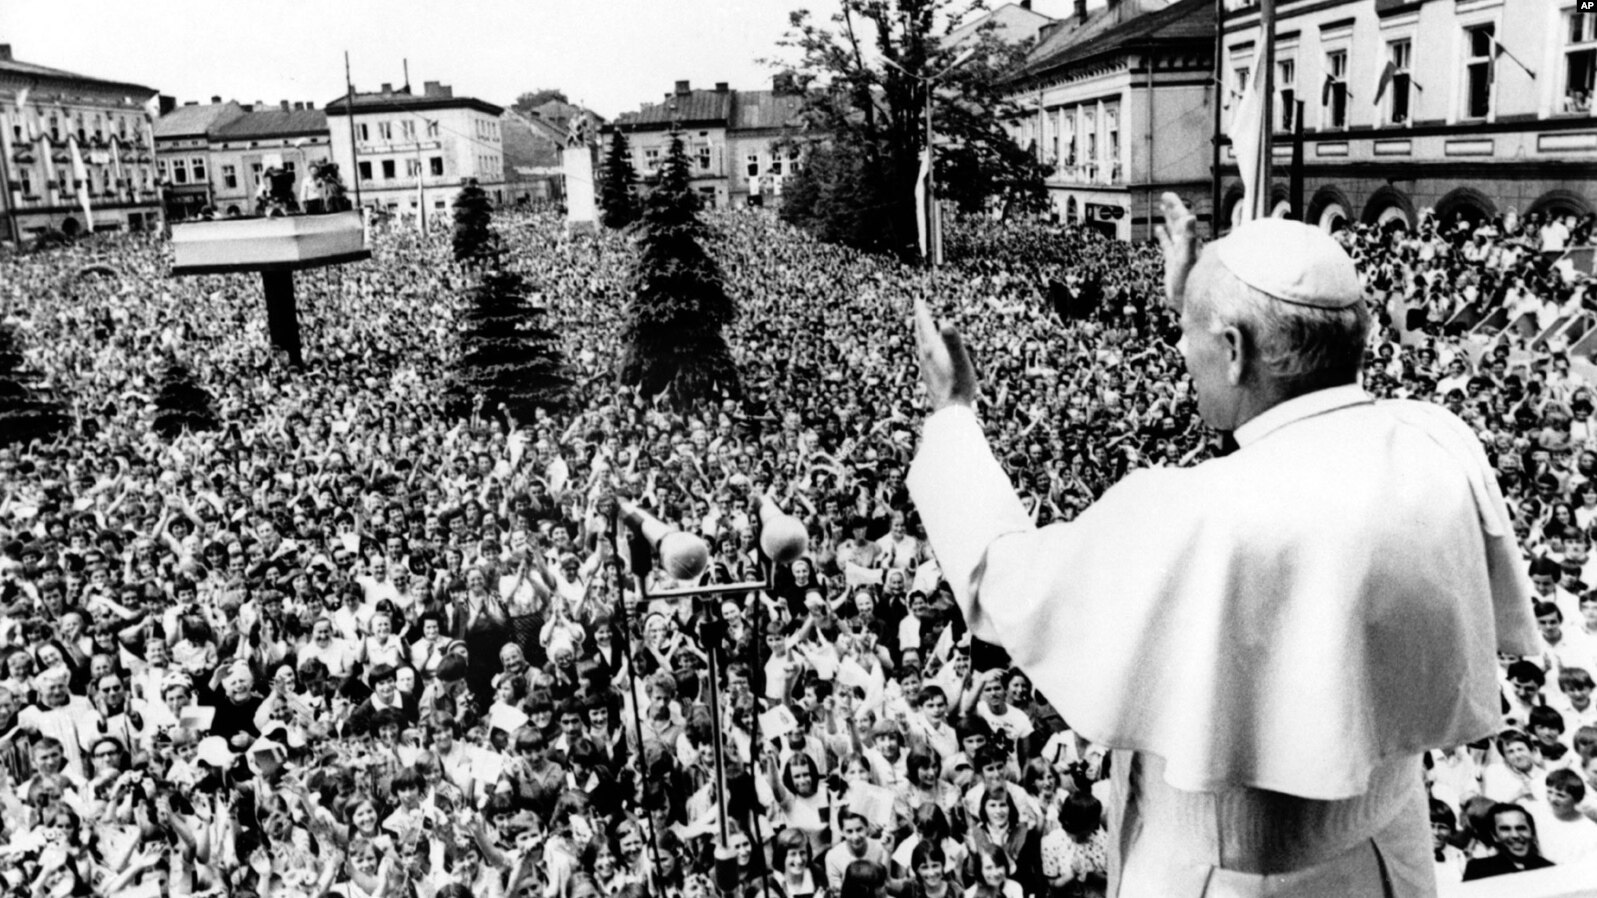 Папа Іван Павло Другий у своєму рідному містечку Вадовіце, Польща, вітає вірних під час першого візиту до комуністичної Польщі після обрання понтифіком. 7 червня 1979 року